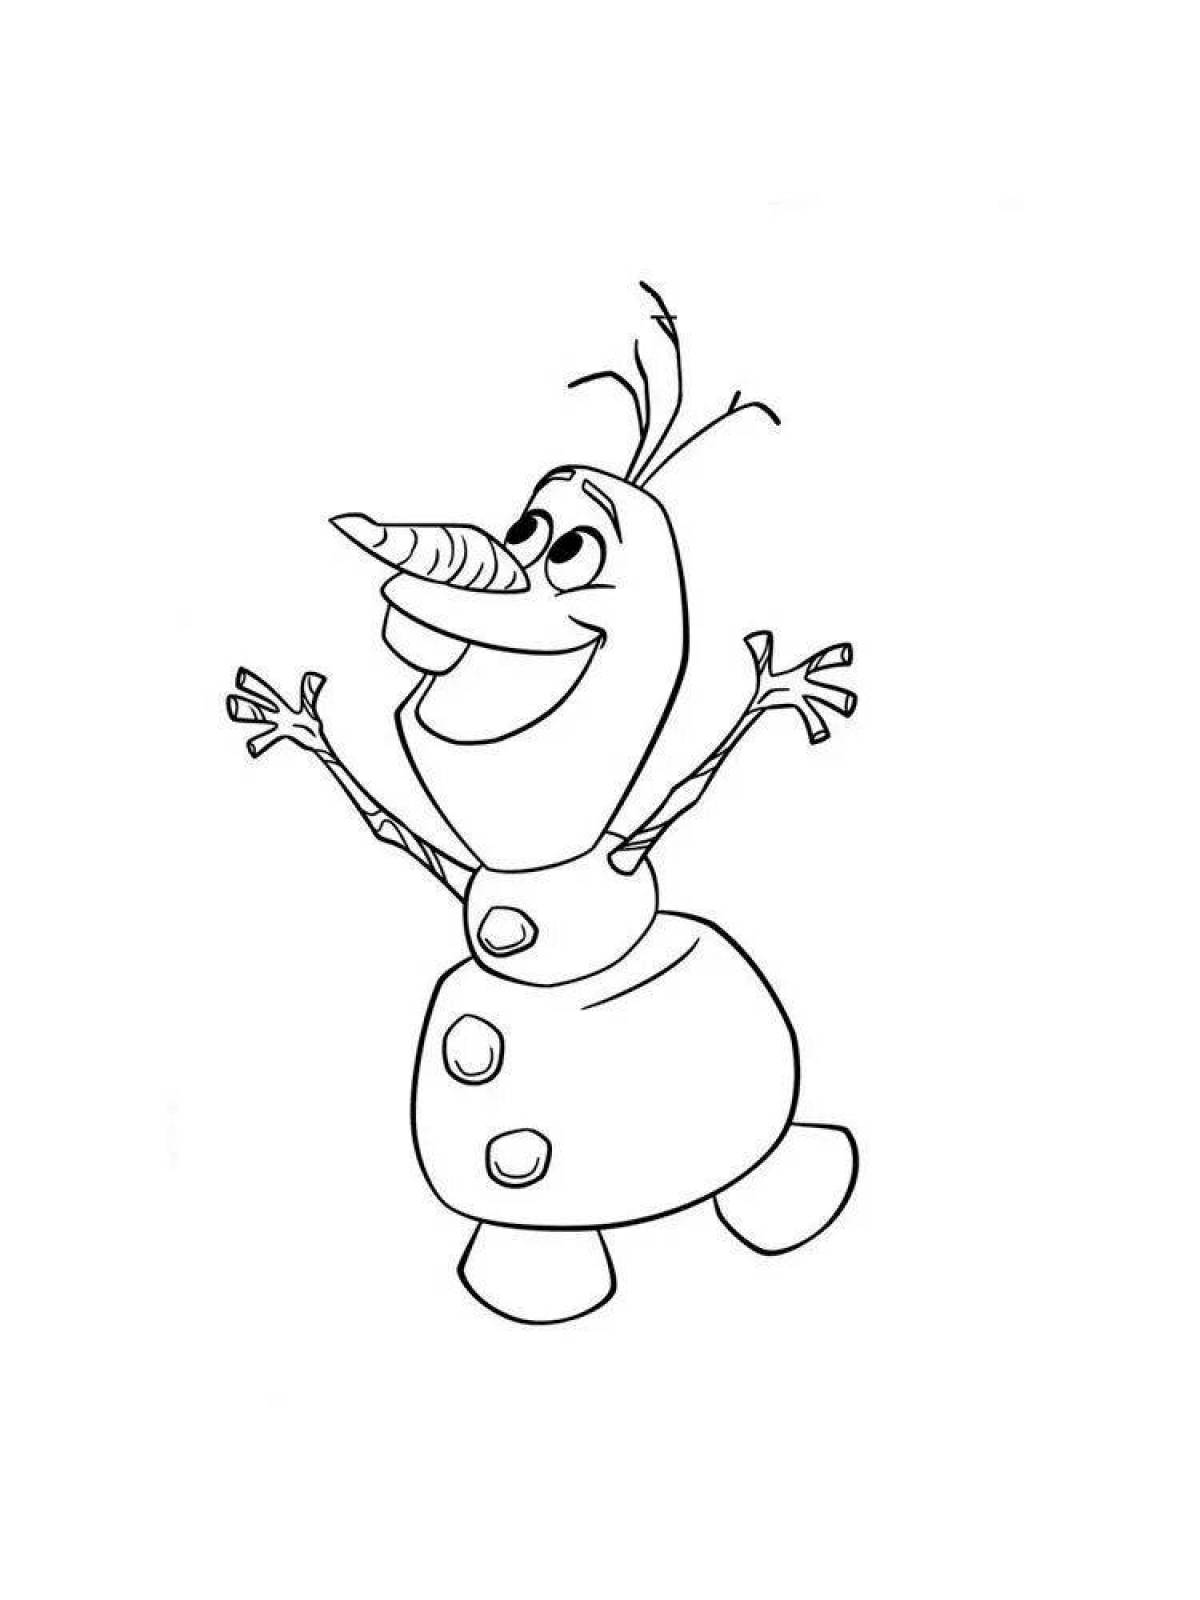 Забавный снеговик олаф раскраска